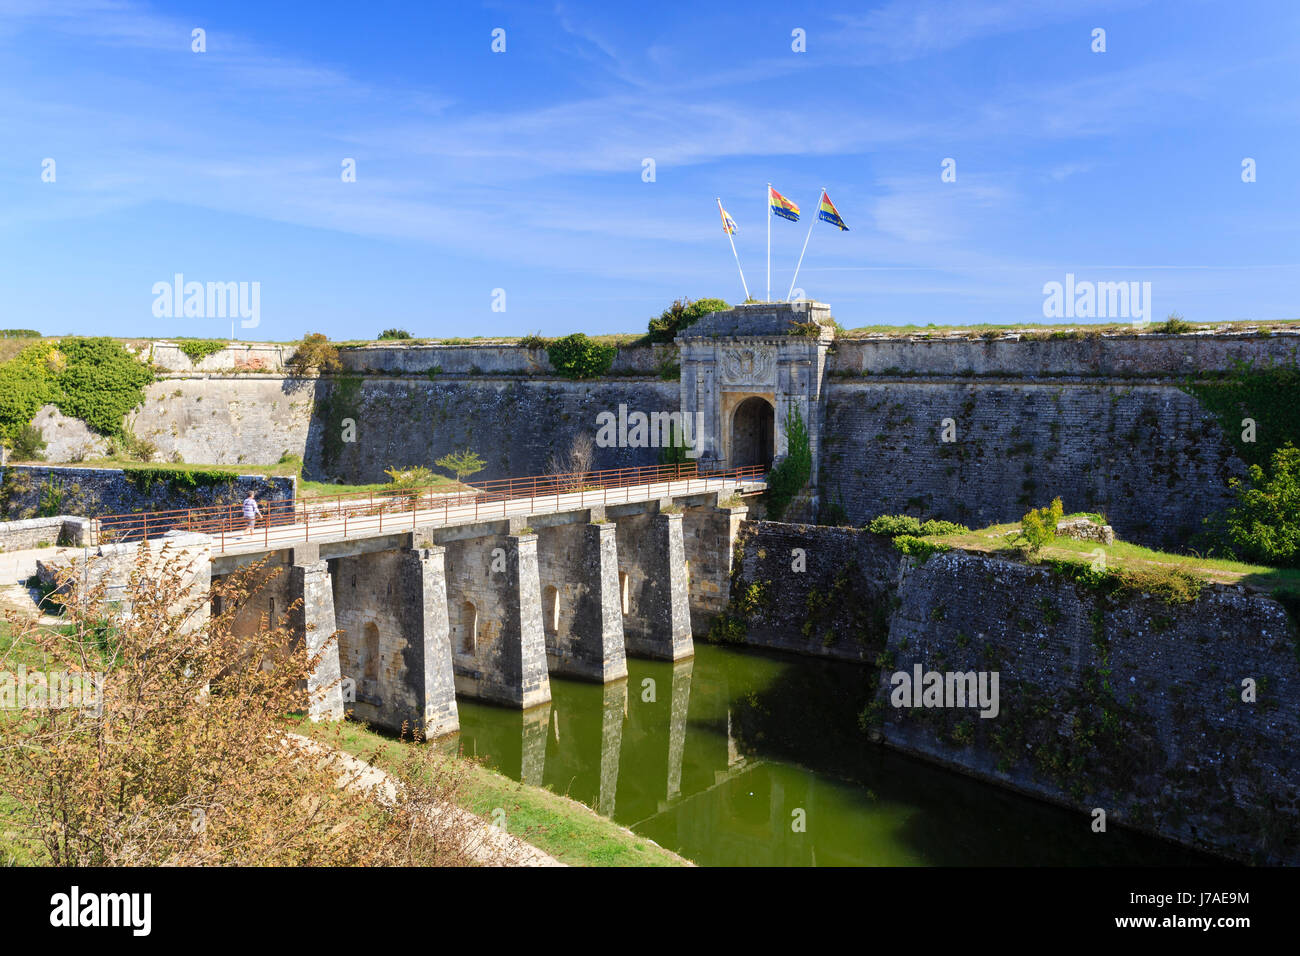 France, Charente Maritime, Oleron island, Chateau d'Oleron, Citadel Stock Photo